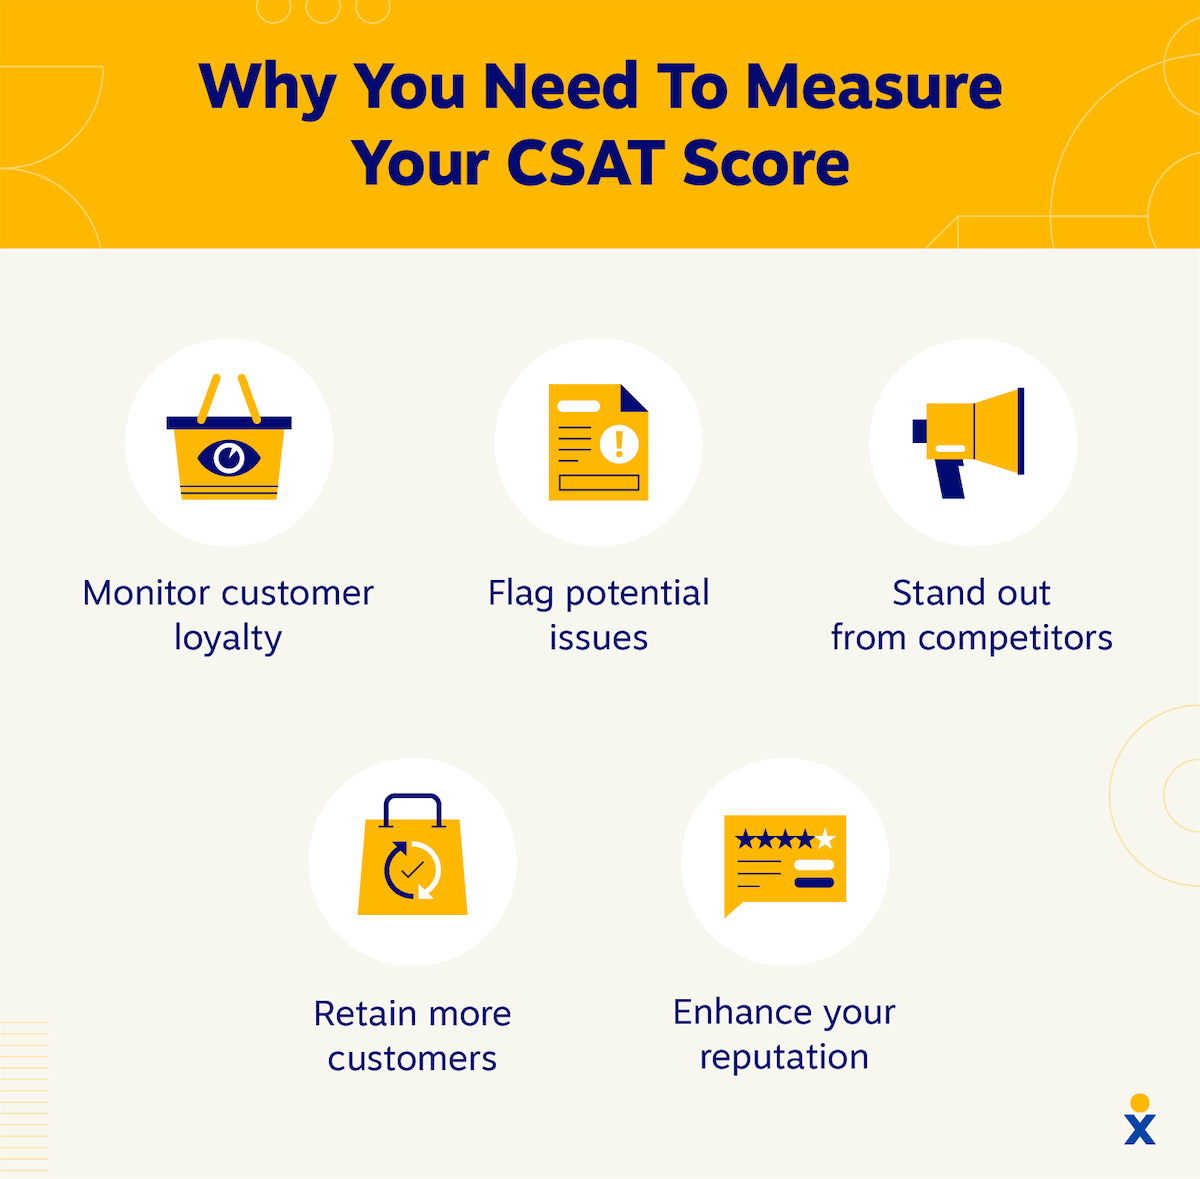 por qué deberías medir tu puntuación CSAT